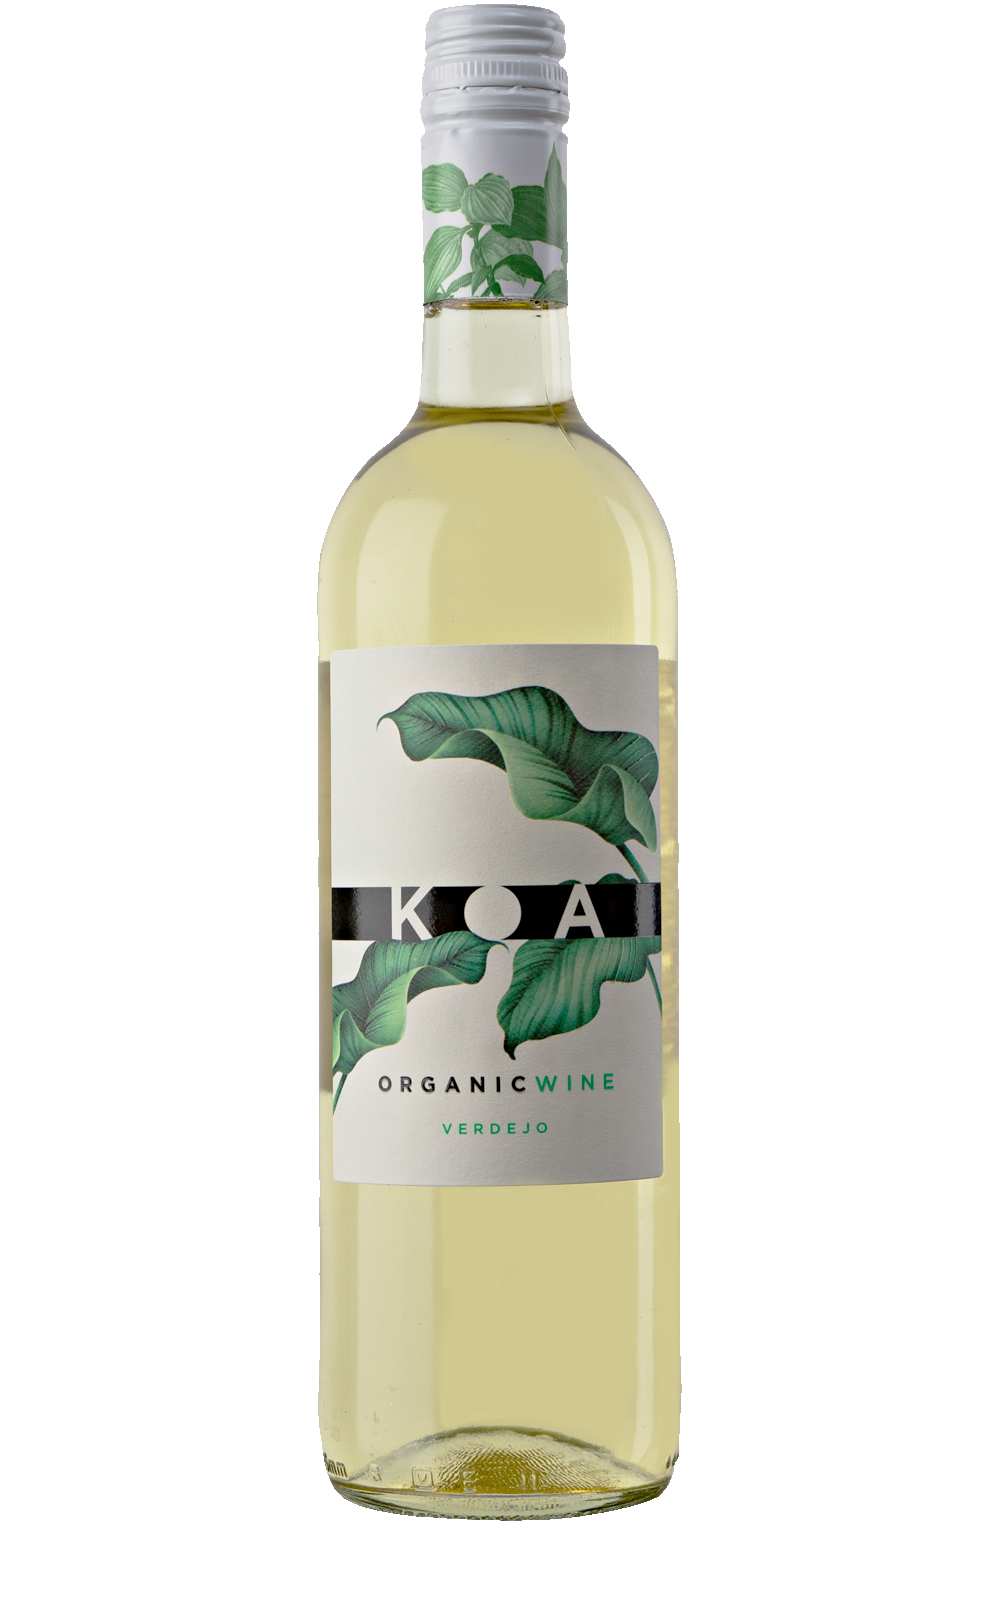 Organic wine Koa Verdejo Spanje Jumilla Reserva de la Tierra